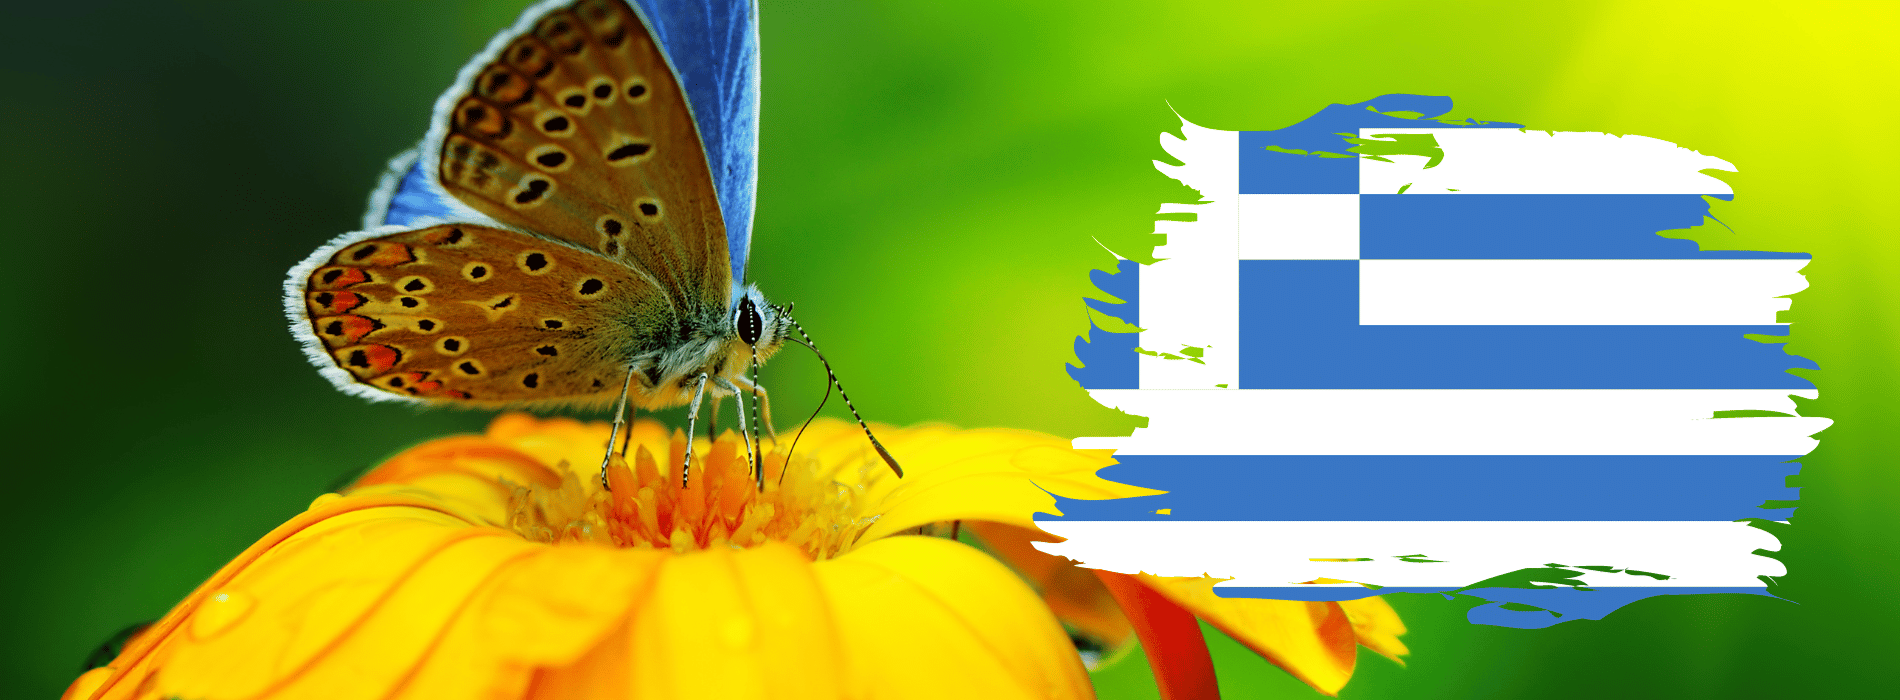 Symbolik des griechischen Schmetterlings